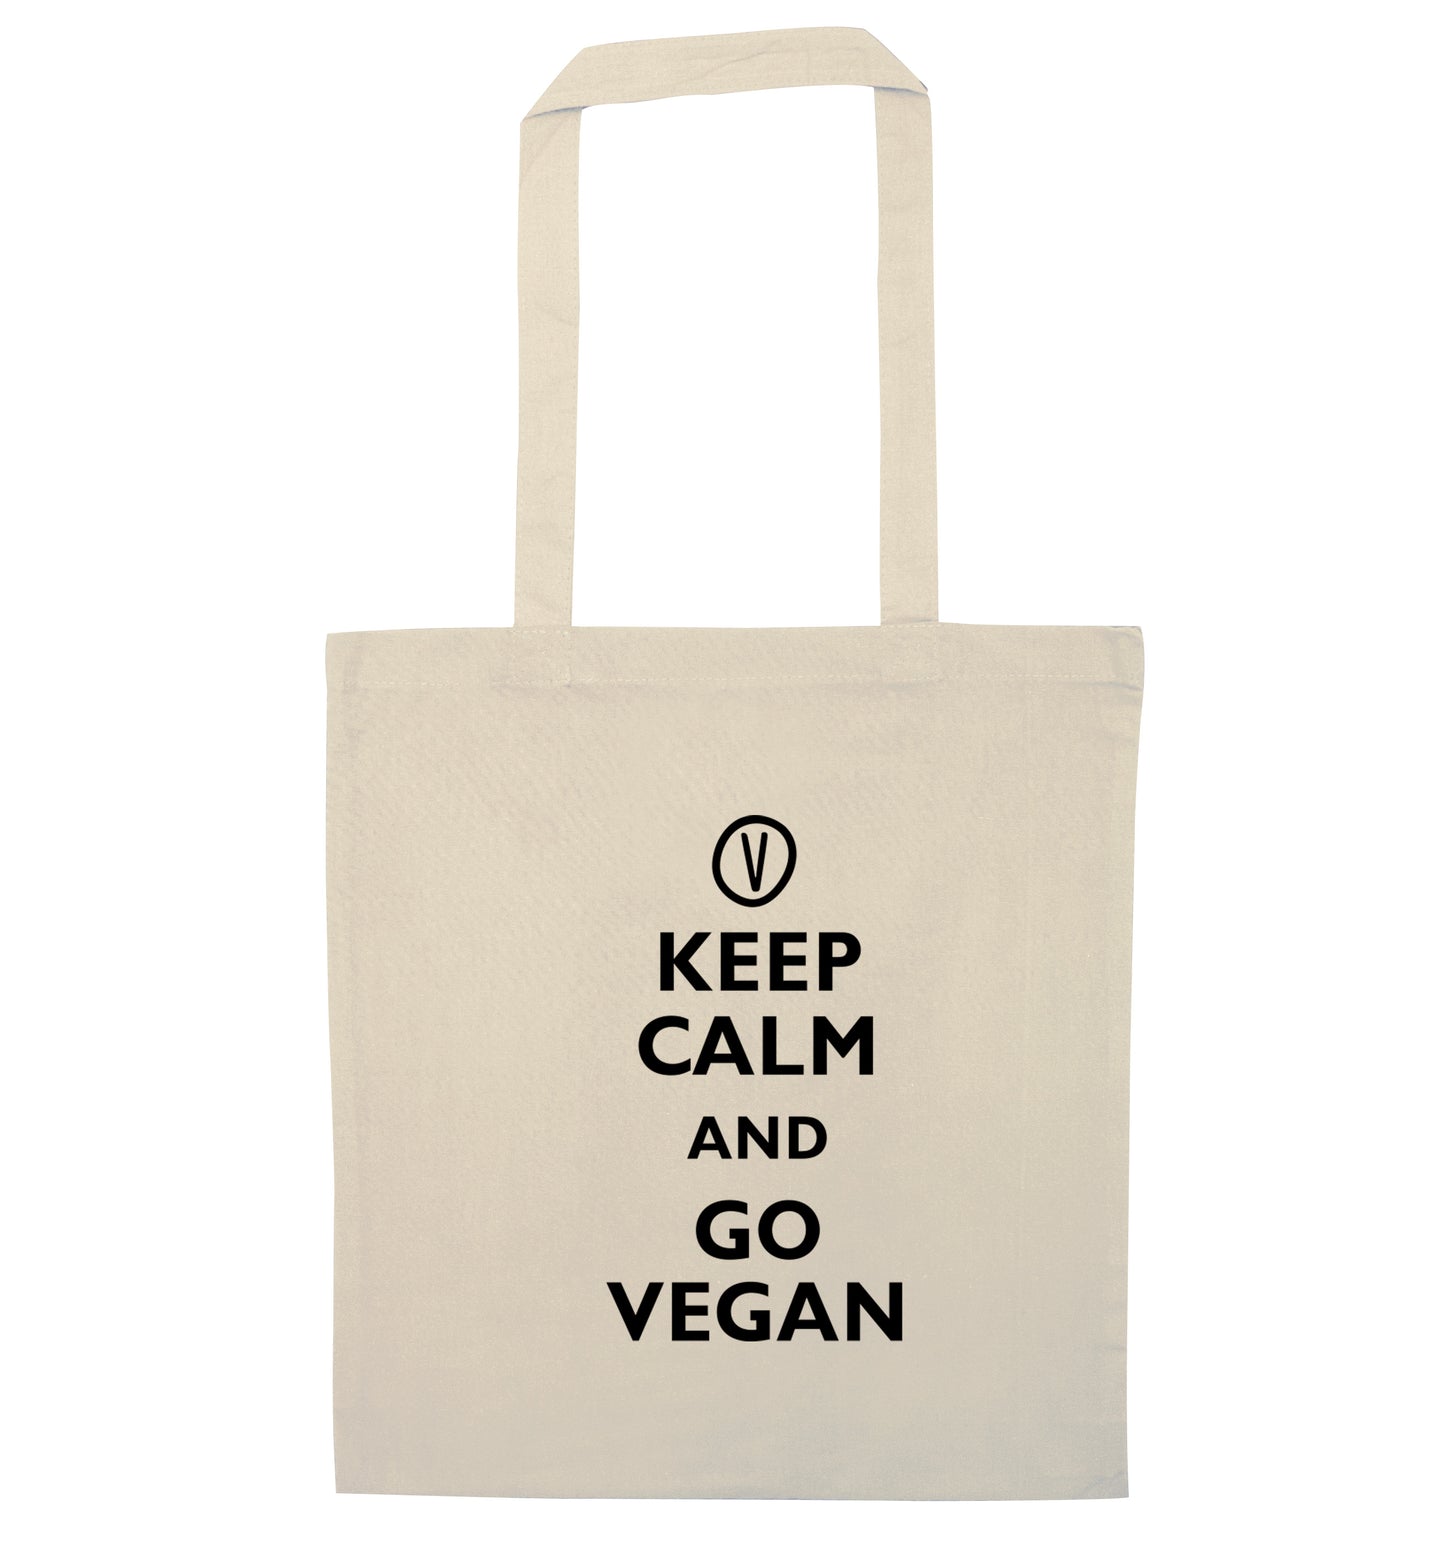 Keep calm and go vegan natural tote bag